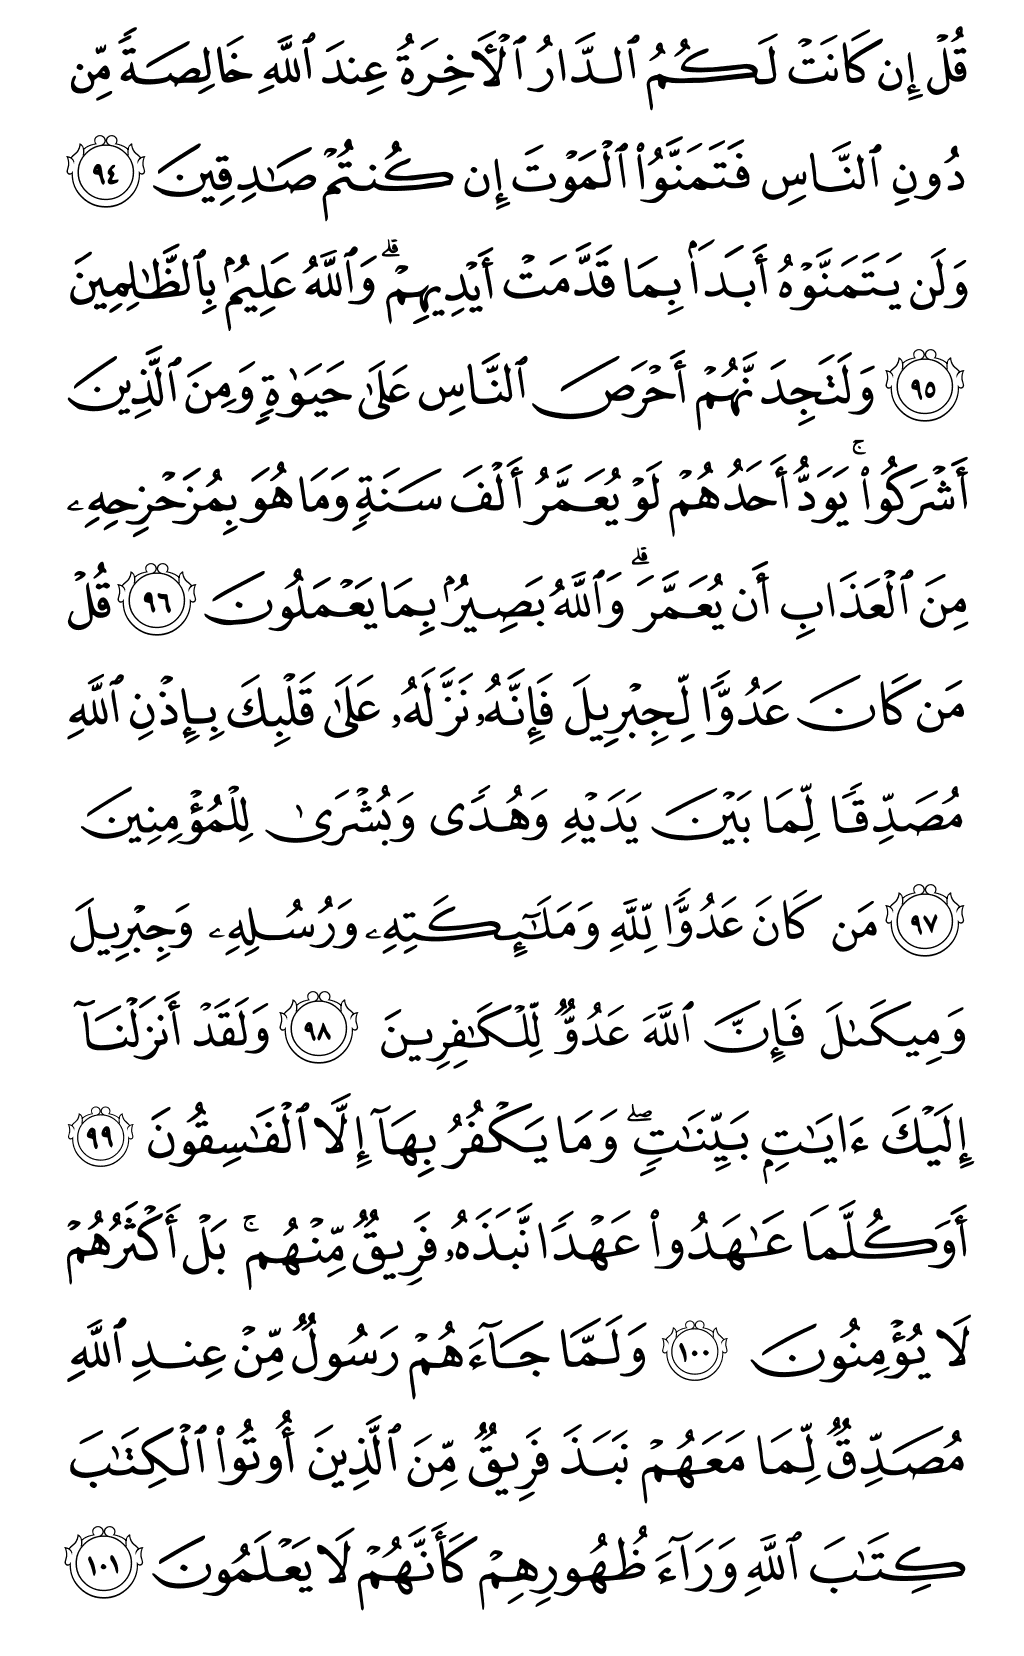 الصفحة رقم 15 من القرآن الكريم